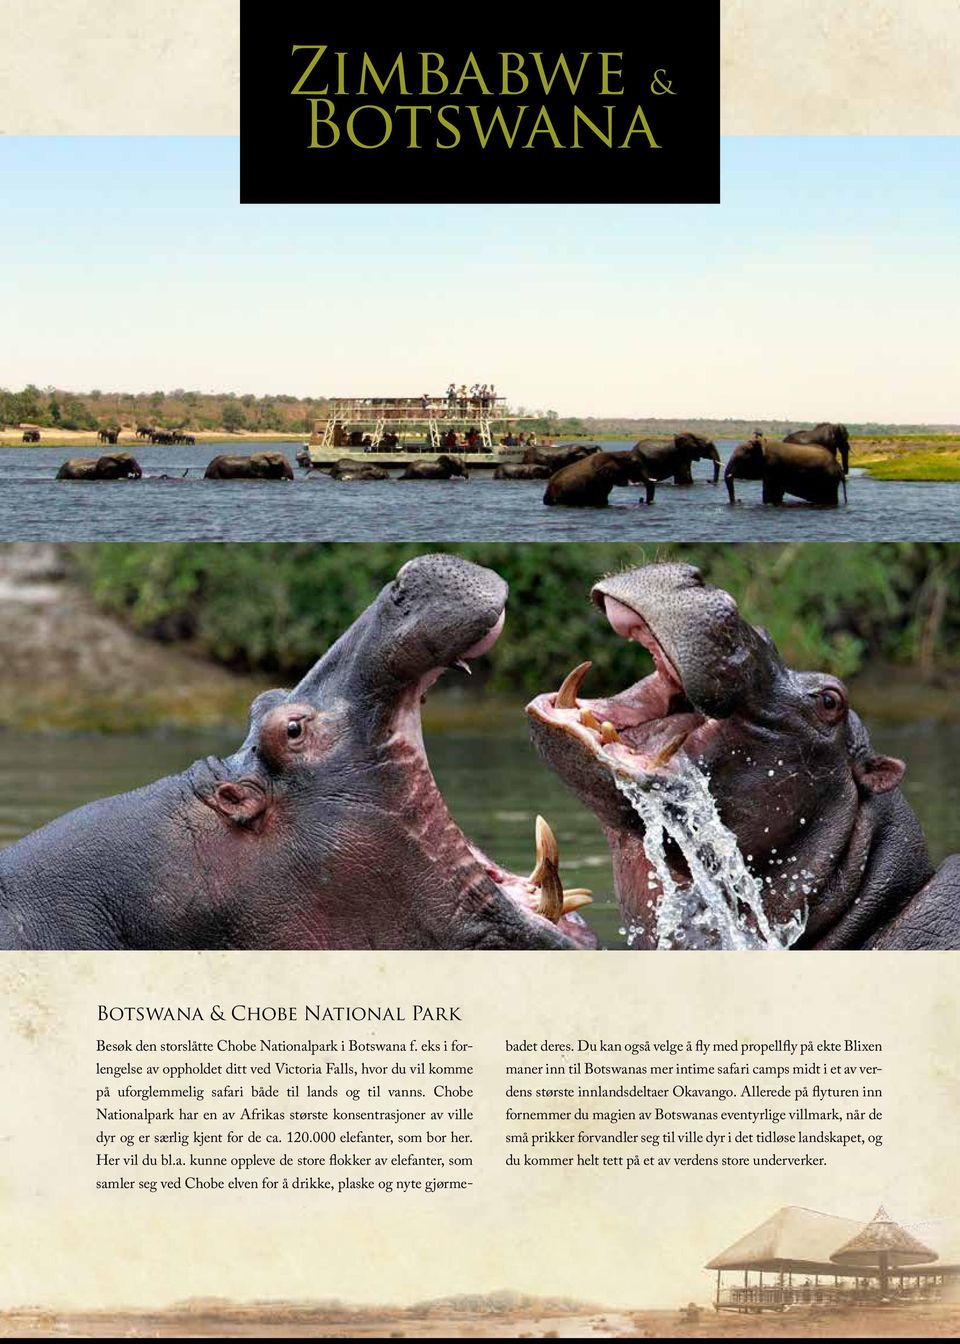 Chobe Nationalpark har en av Afrikas største konsentrasjoner av ville dyr og er særlig kjent for de ca. 120.000 elefanter, som bor her. Her vil du bl.a. kunne oppleve de store flokker av elefanter, som samler seg ved Chobe elven for å drikke, plaske og nyte gjørmebadet deres.